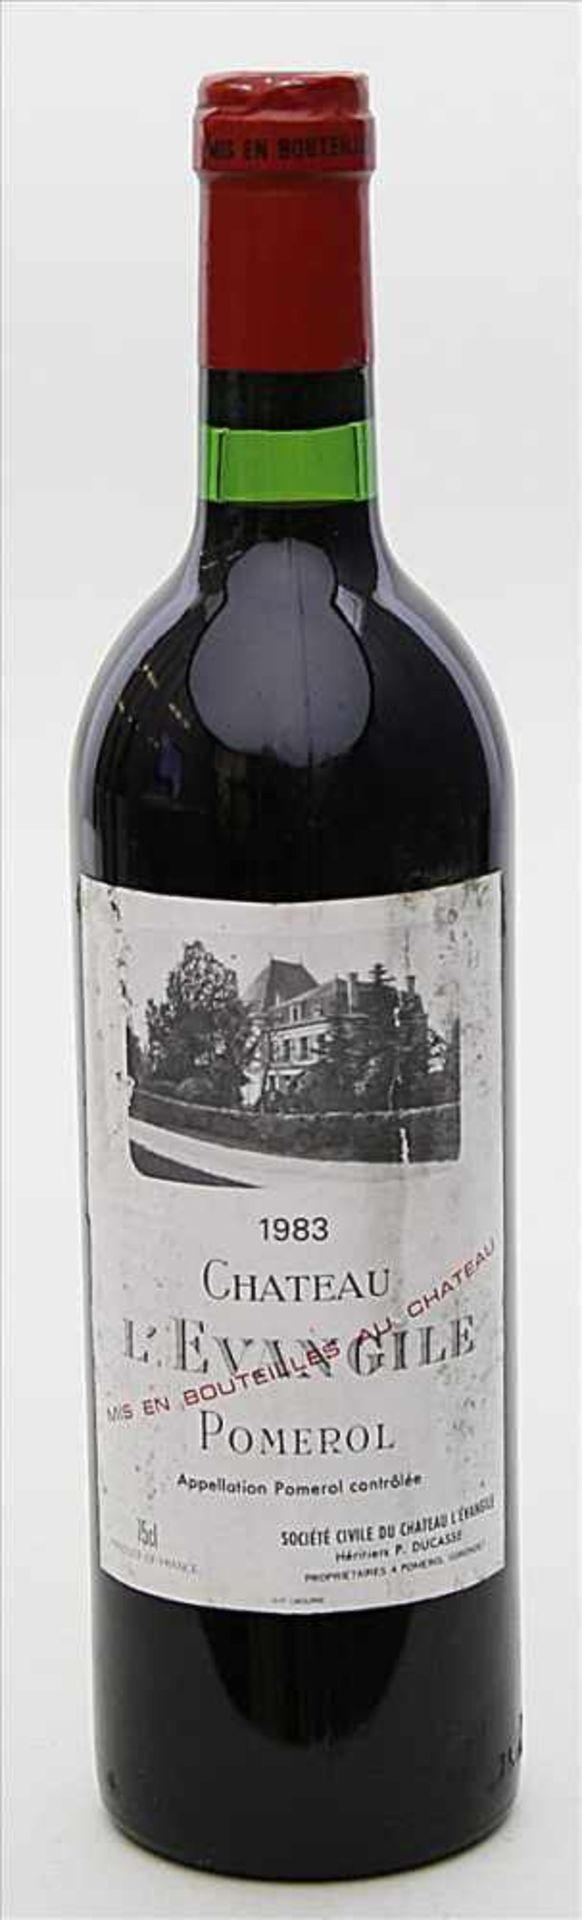 Flasche Rotwein "Chateau l'Evangile Pomerol 1983".Flasche wurde gut gelagert.- - -19.33 % buyer's